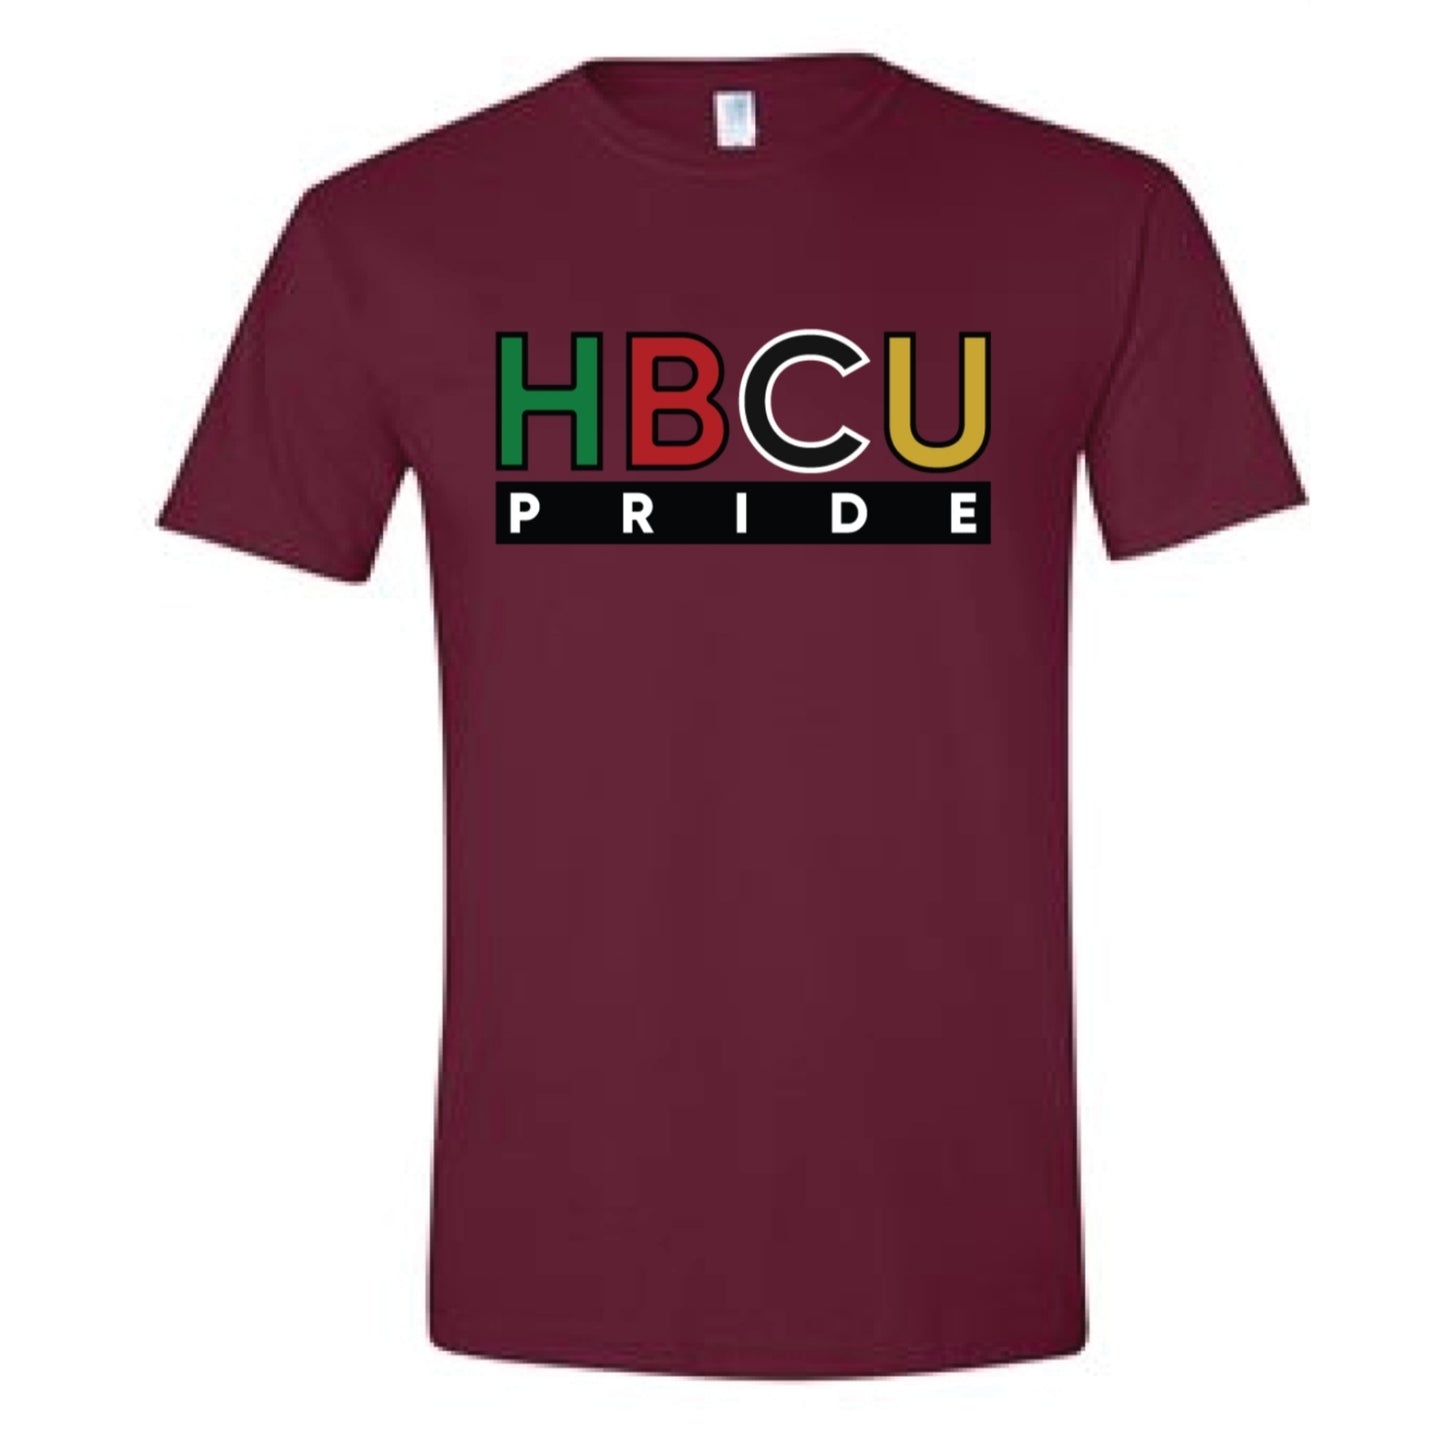 The HBCU Pride Tee in Maroon